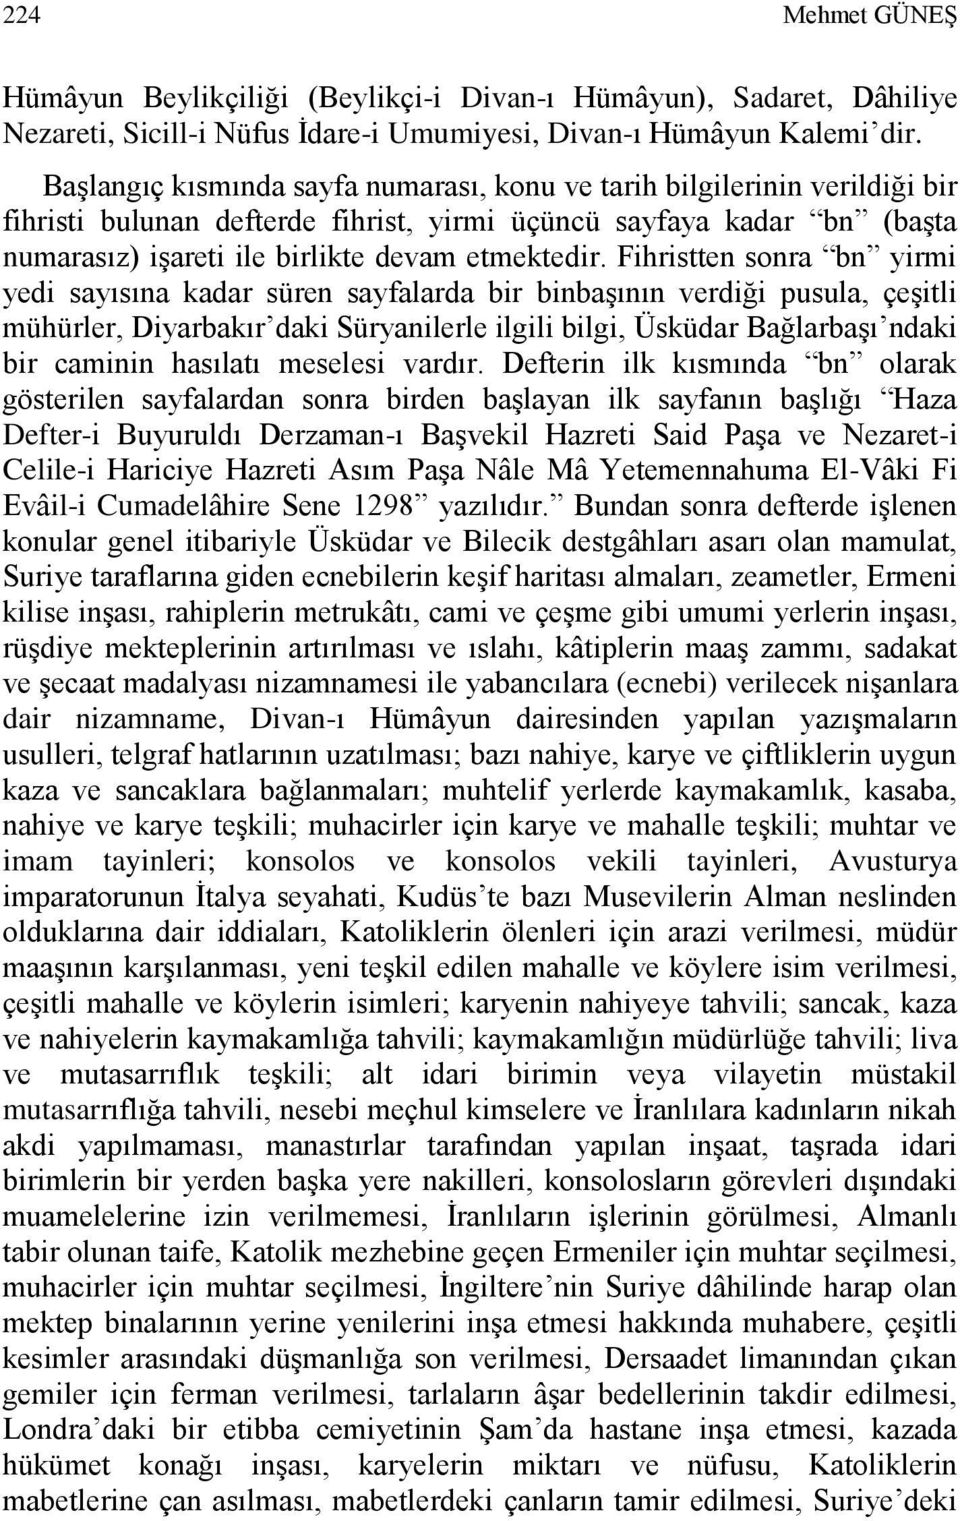 Fihristten sonra bn yirmi yedi sayısına kadar süren sayfalarda bir binbaşının verdiği pusula, çeşitli mühürler, Diyarbakır daki Süryanilerle ilgili bilgi, Üsküdar Bağlarbaşı ndaki bir caminin